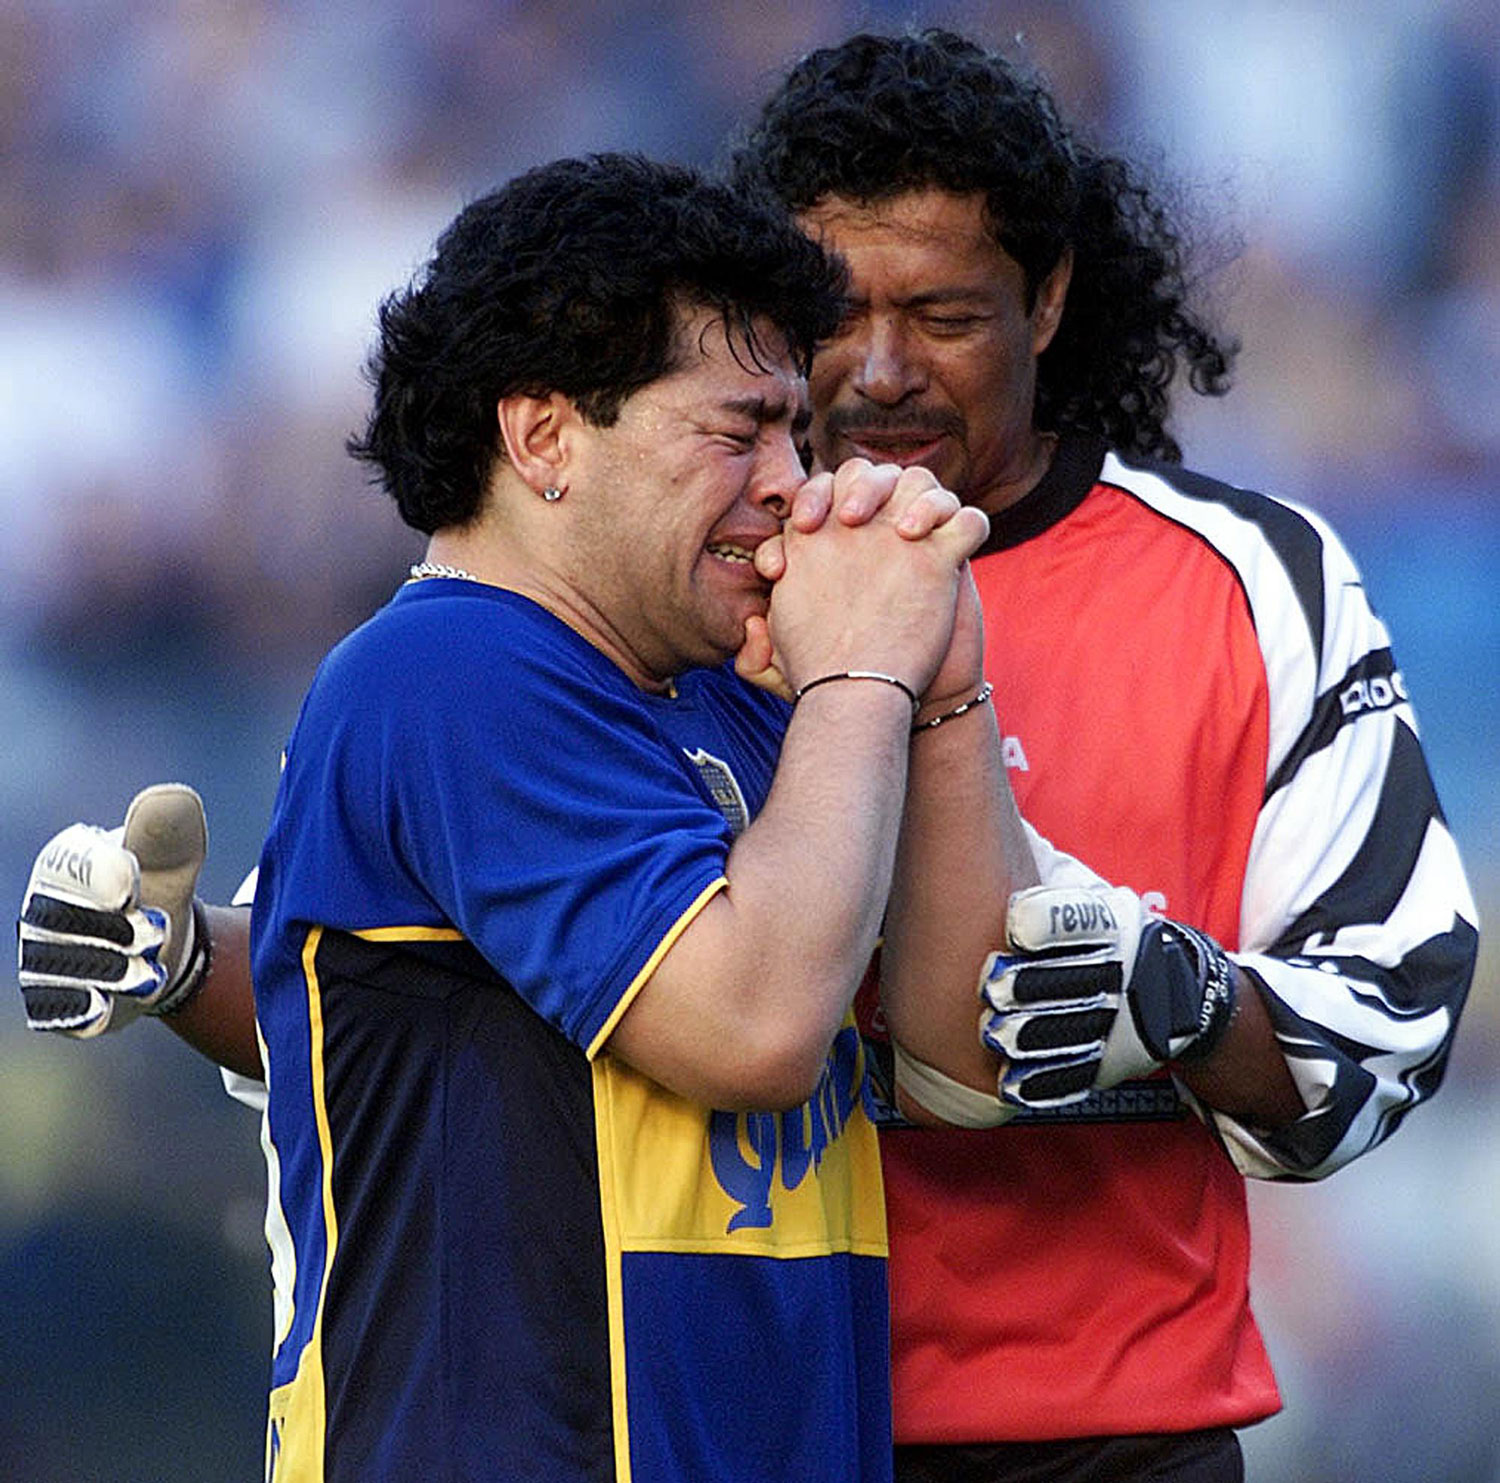 René Higuita consuela de Maradona luego de su famoso discurso de 